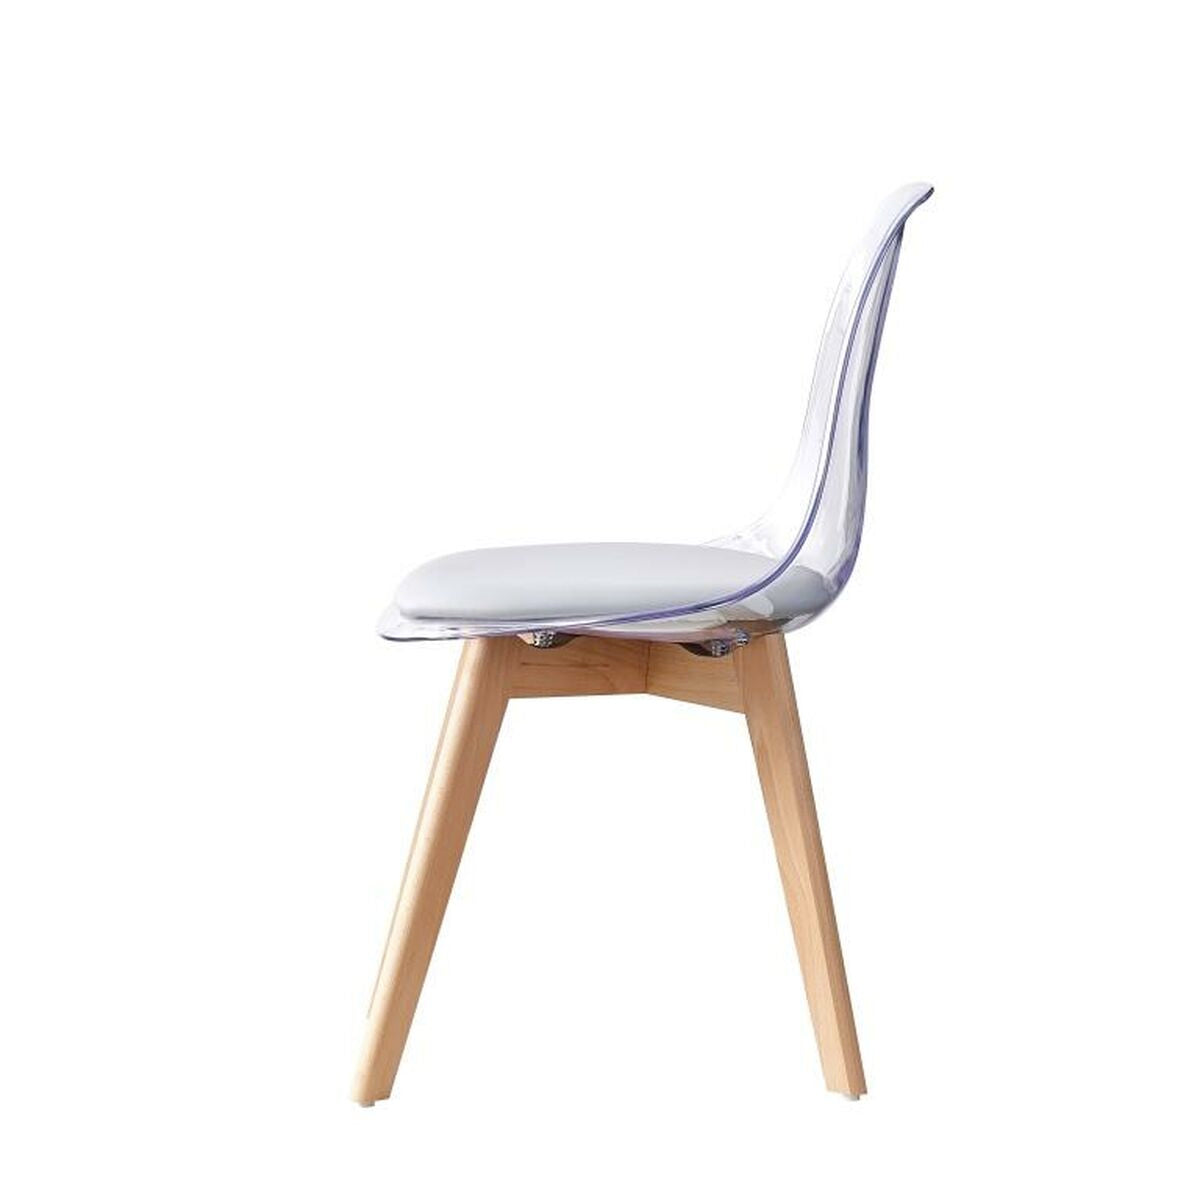 Chaise Design Scandinave Transparente avec assise Grise Home Decor Gris Bois et Polycarbonate (54 x 47 x 81 cm)